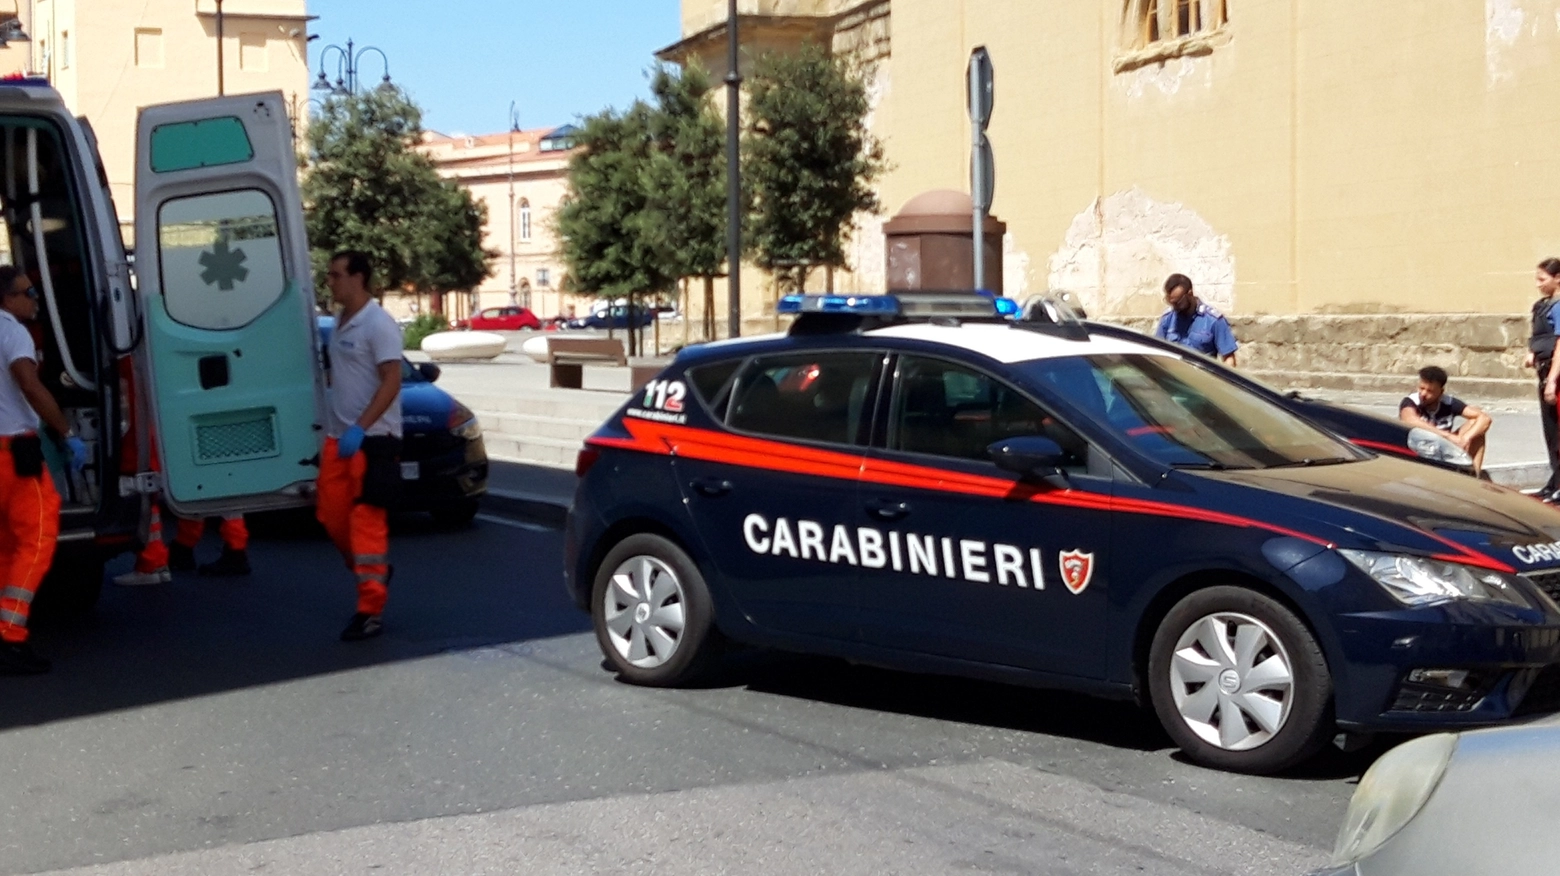 Carabinieri e ambulanza per l'intervento dopo la rissa dell'altro giorno in centro